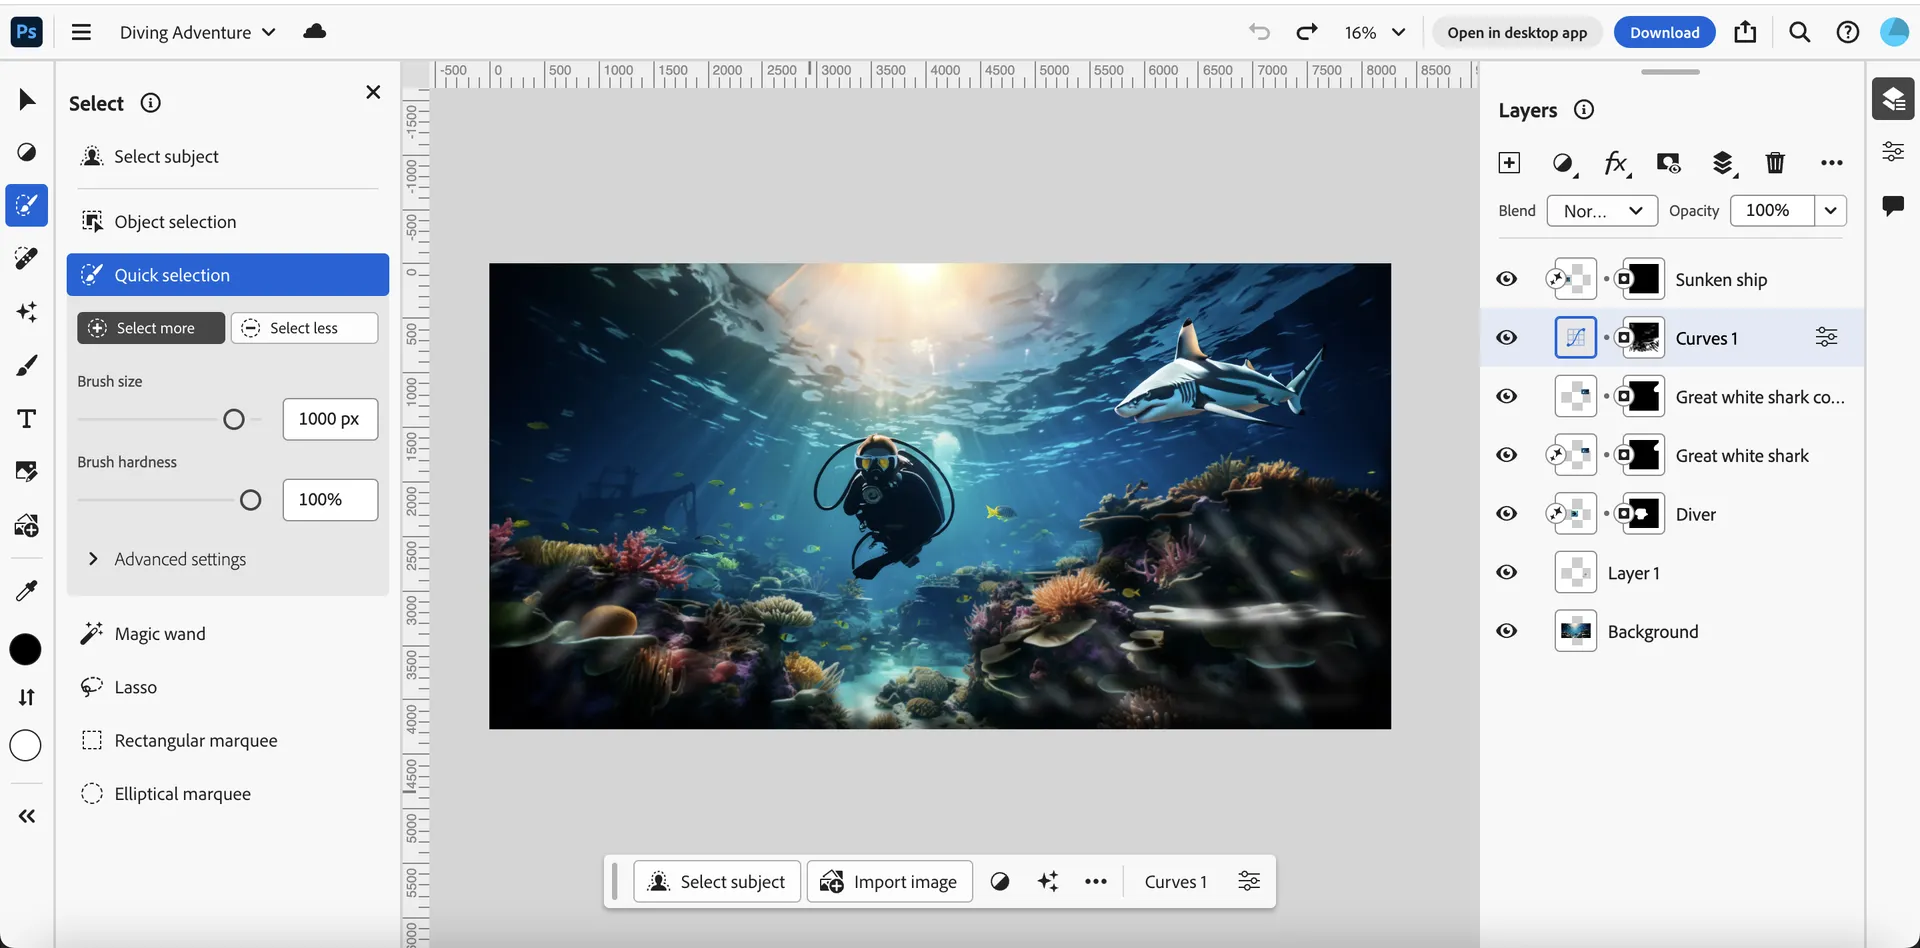 Adobe ha lanzado una versión web de Photoshop con herramientas populares basadas en IA generativa.-2